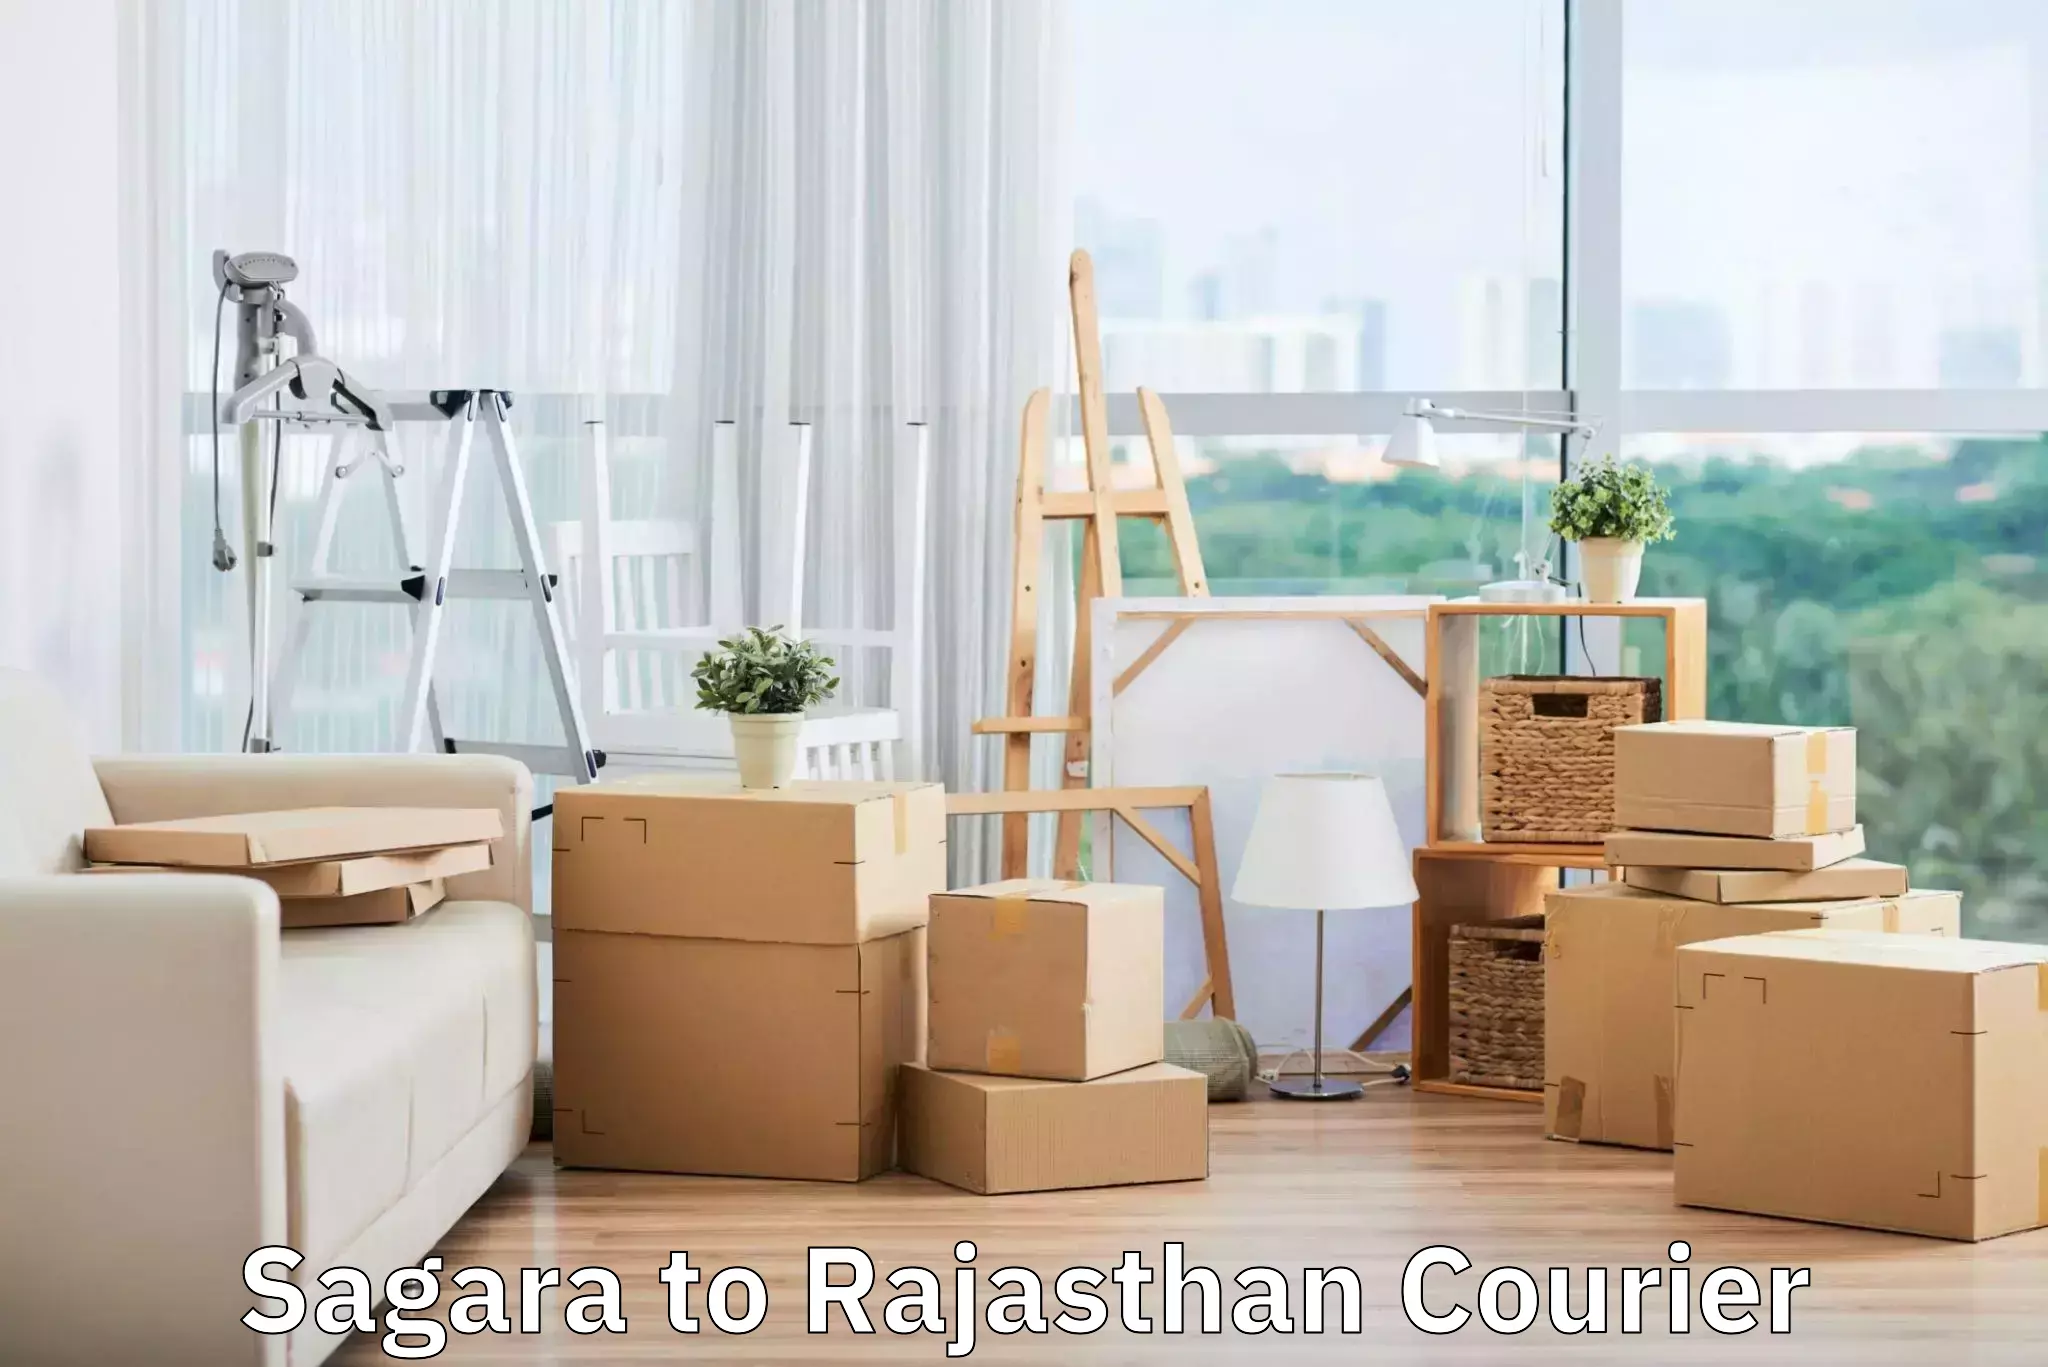 Luggage transport operations Sagara to Rajasthan